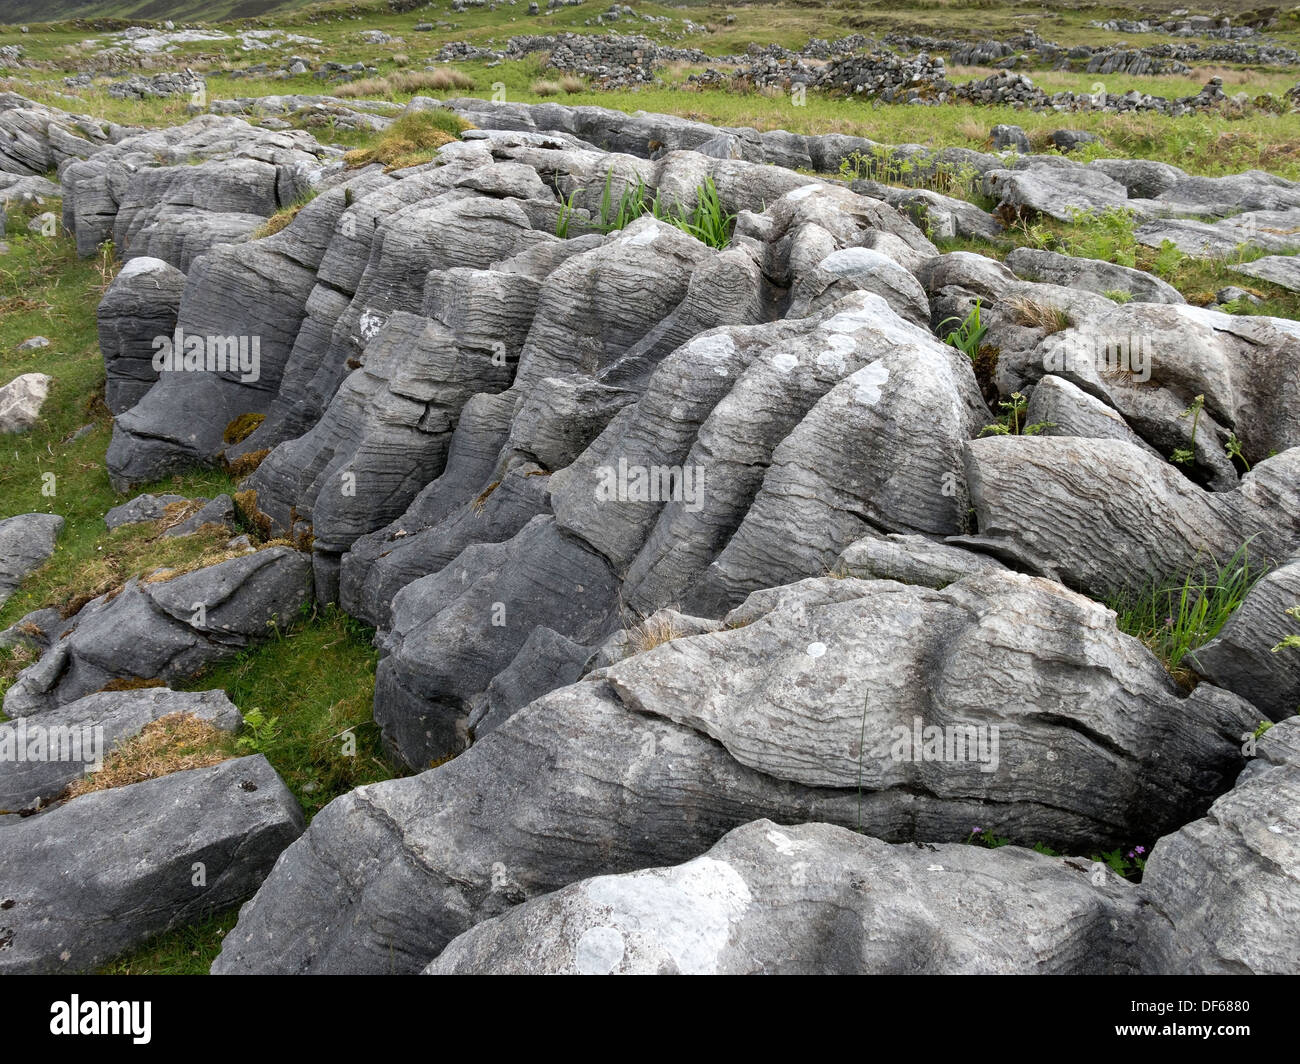 Capeado erosionado doloarenitos / pavimento de piedra caliza, formación rocosa Suardal Strath, Isla de Skye, Escocia, Reino Unido. Foto de stock